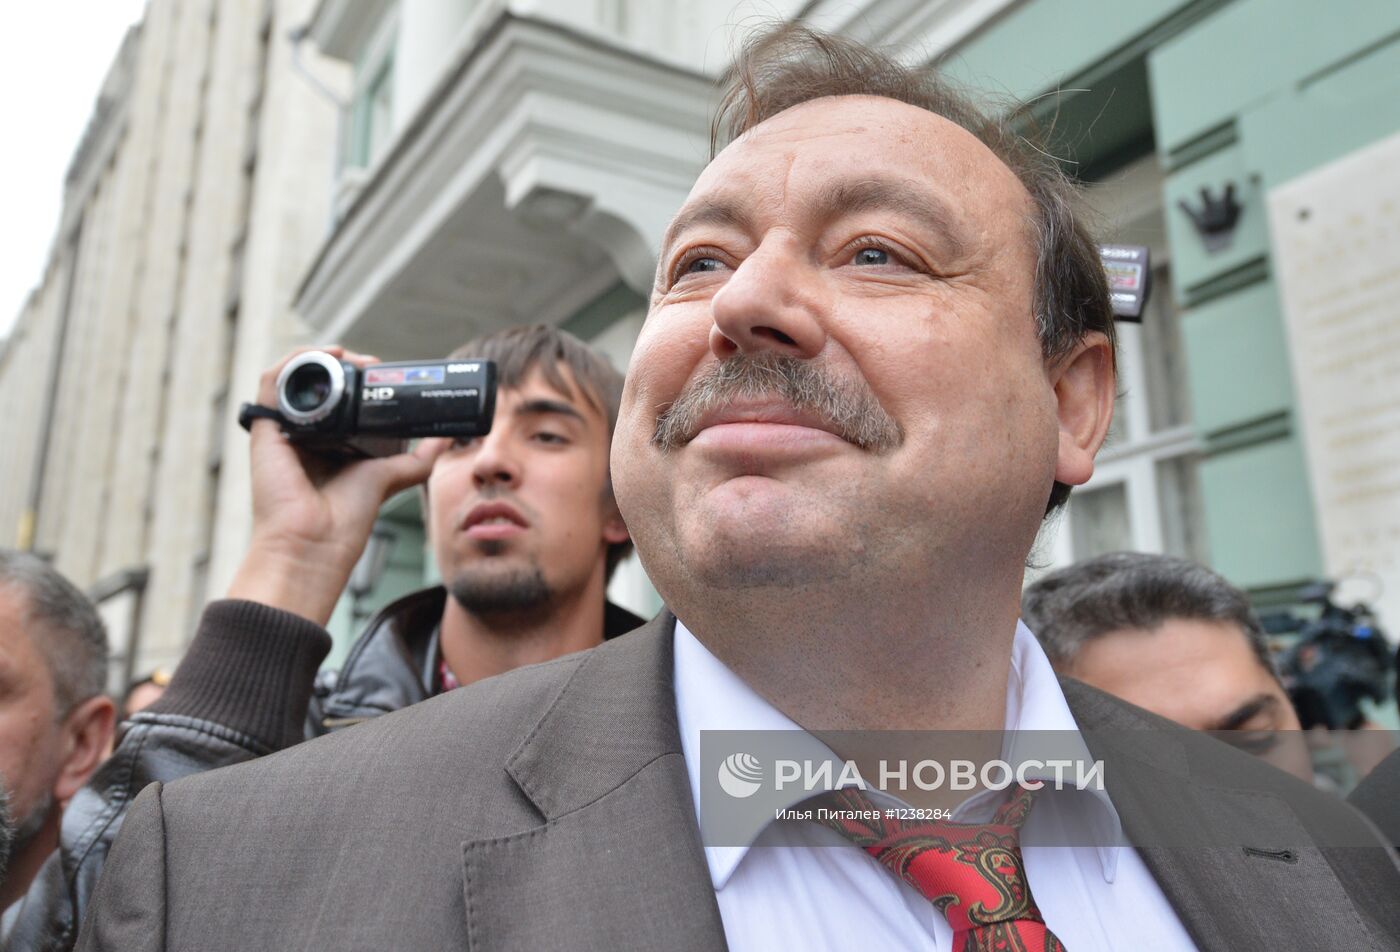 Геннадий Гудков пообщался с журналистами у здания Госдумы РФ